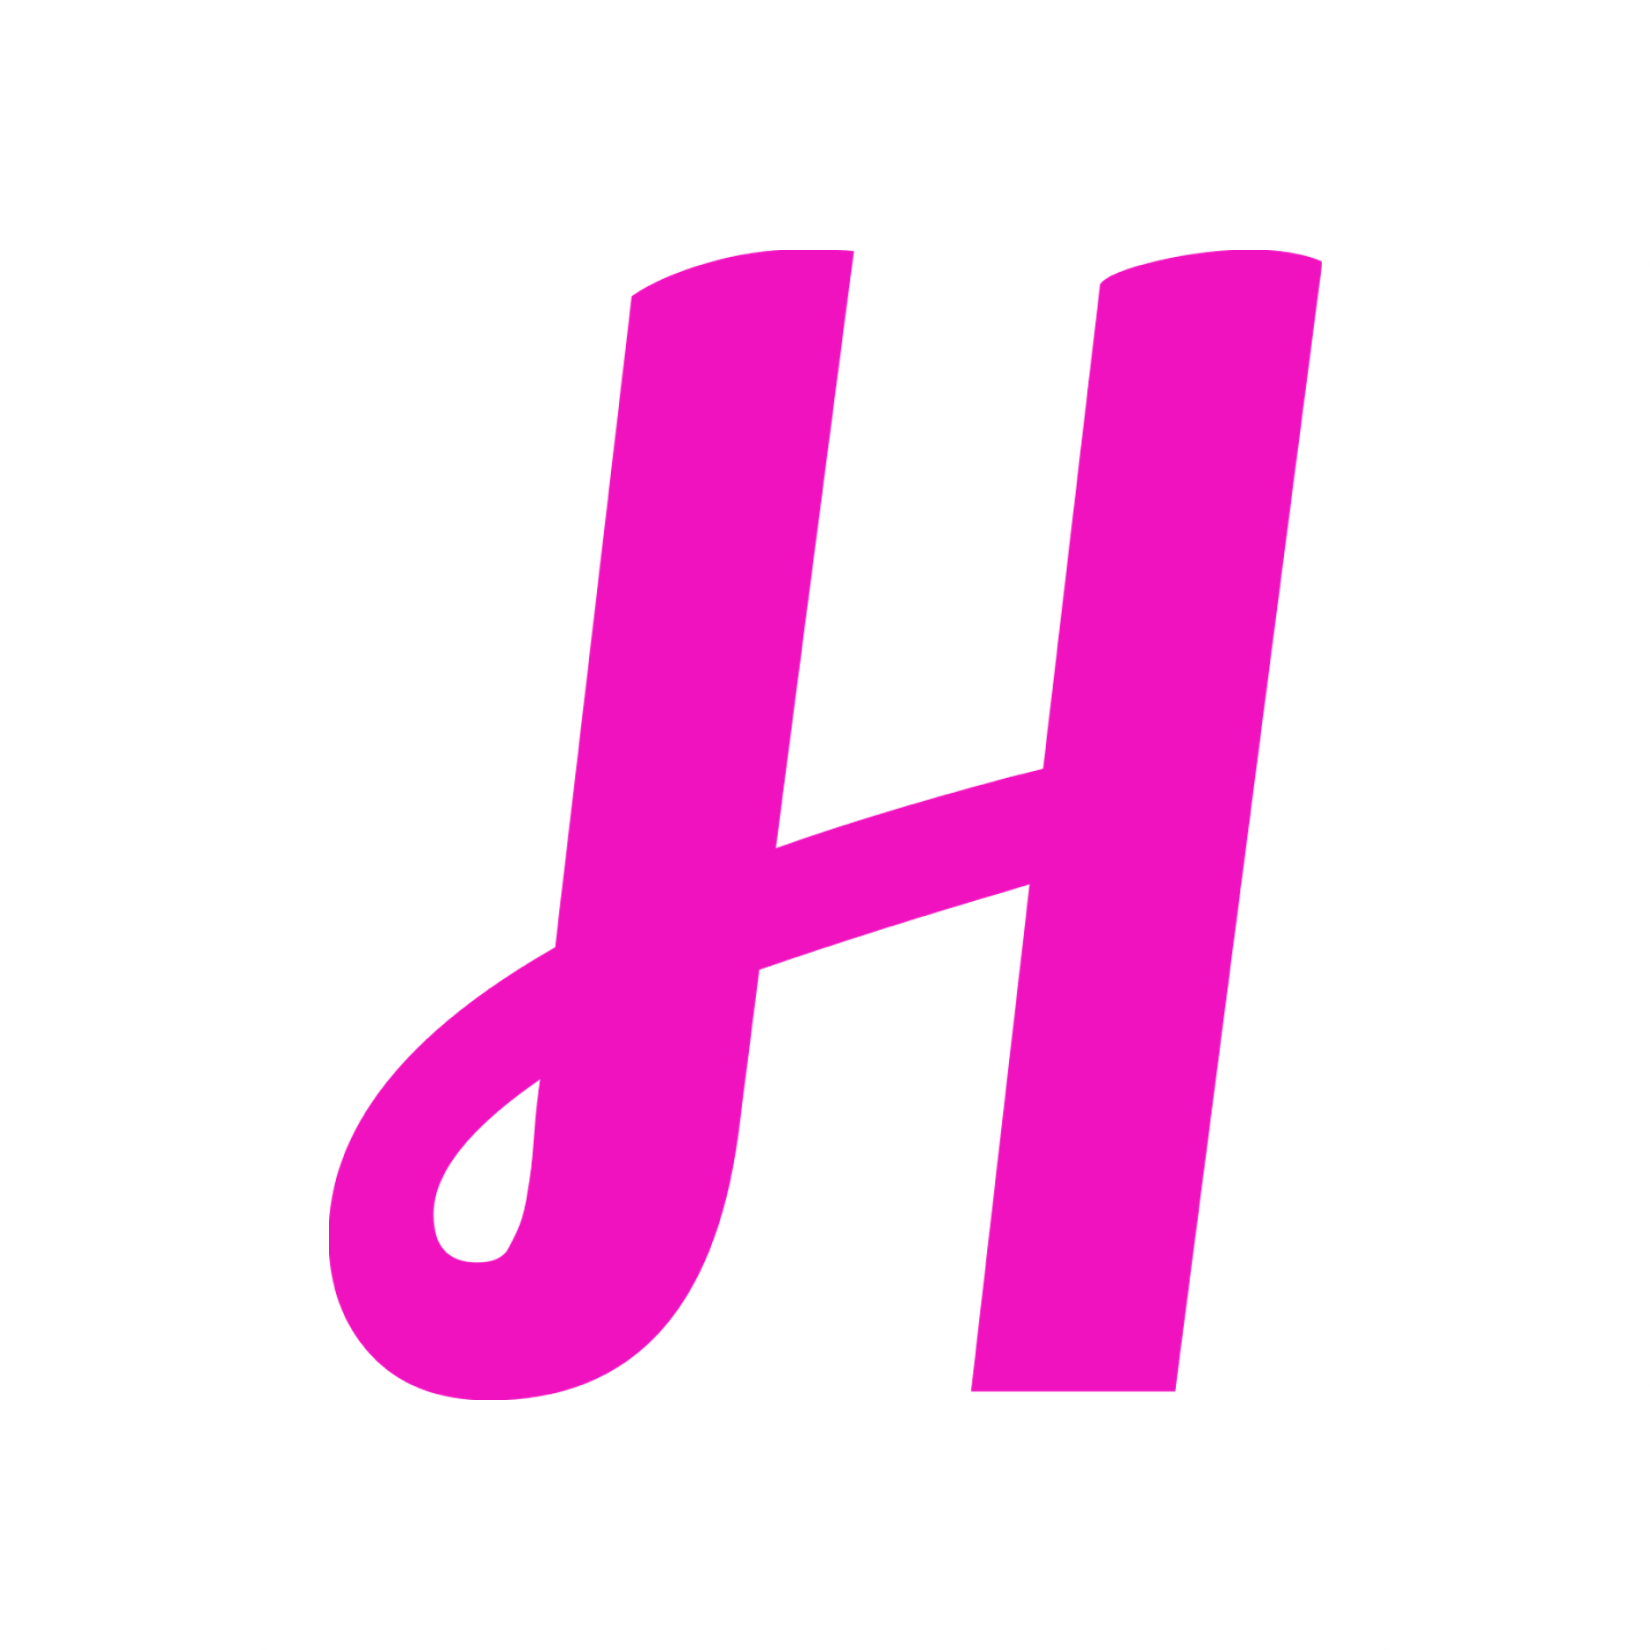 Habit logo